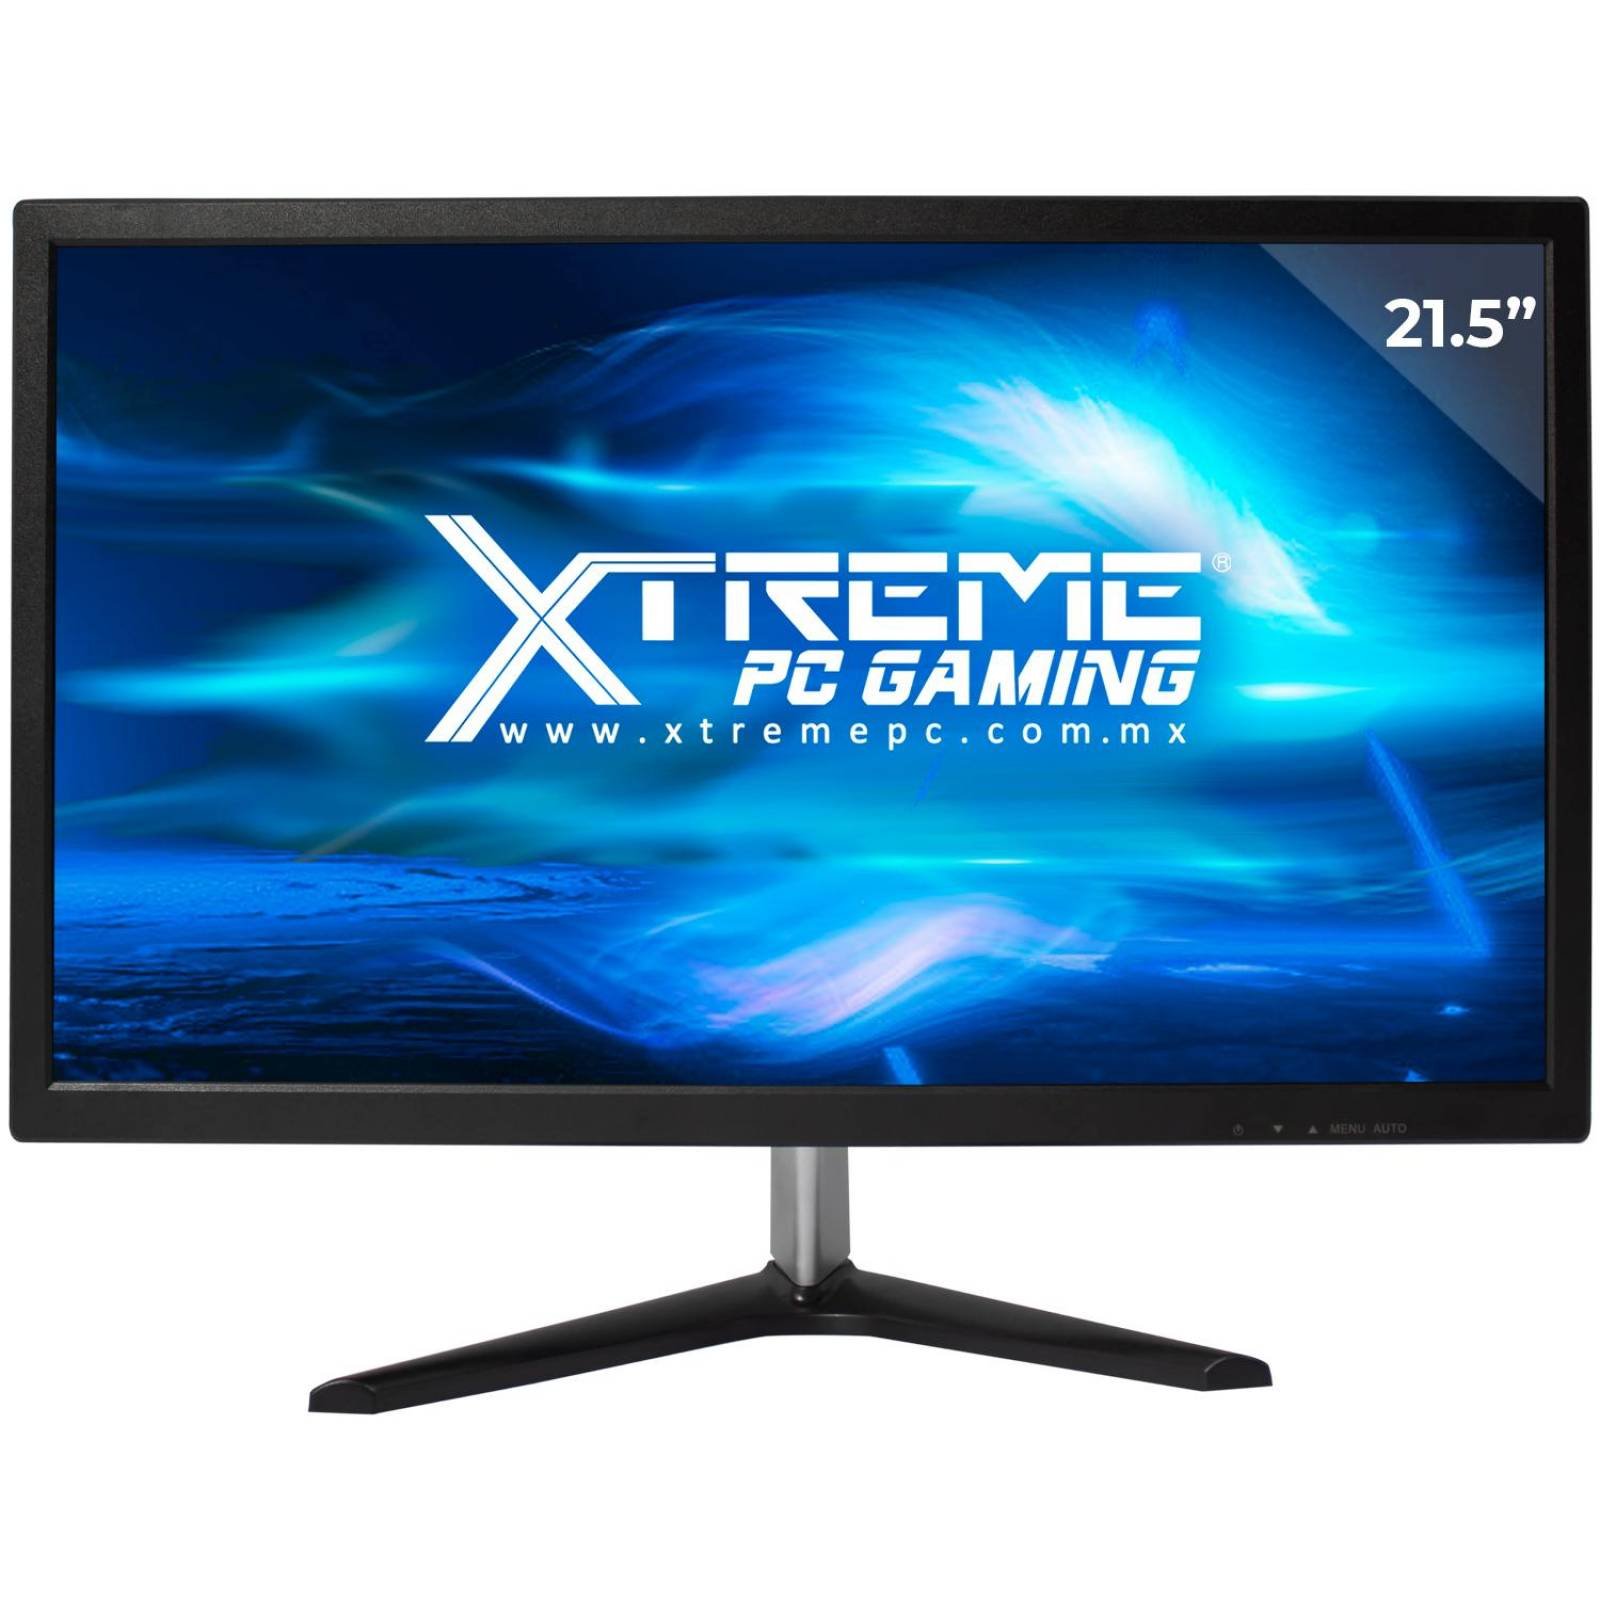 Xtreme PC Gamer AMD Radeon R7 A8 9600 8GB 1TB Monitor 21.5 WIFI 